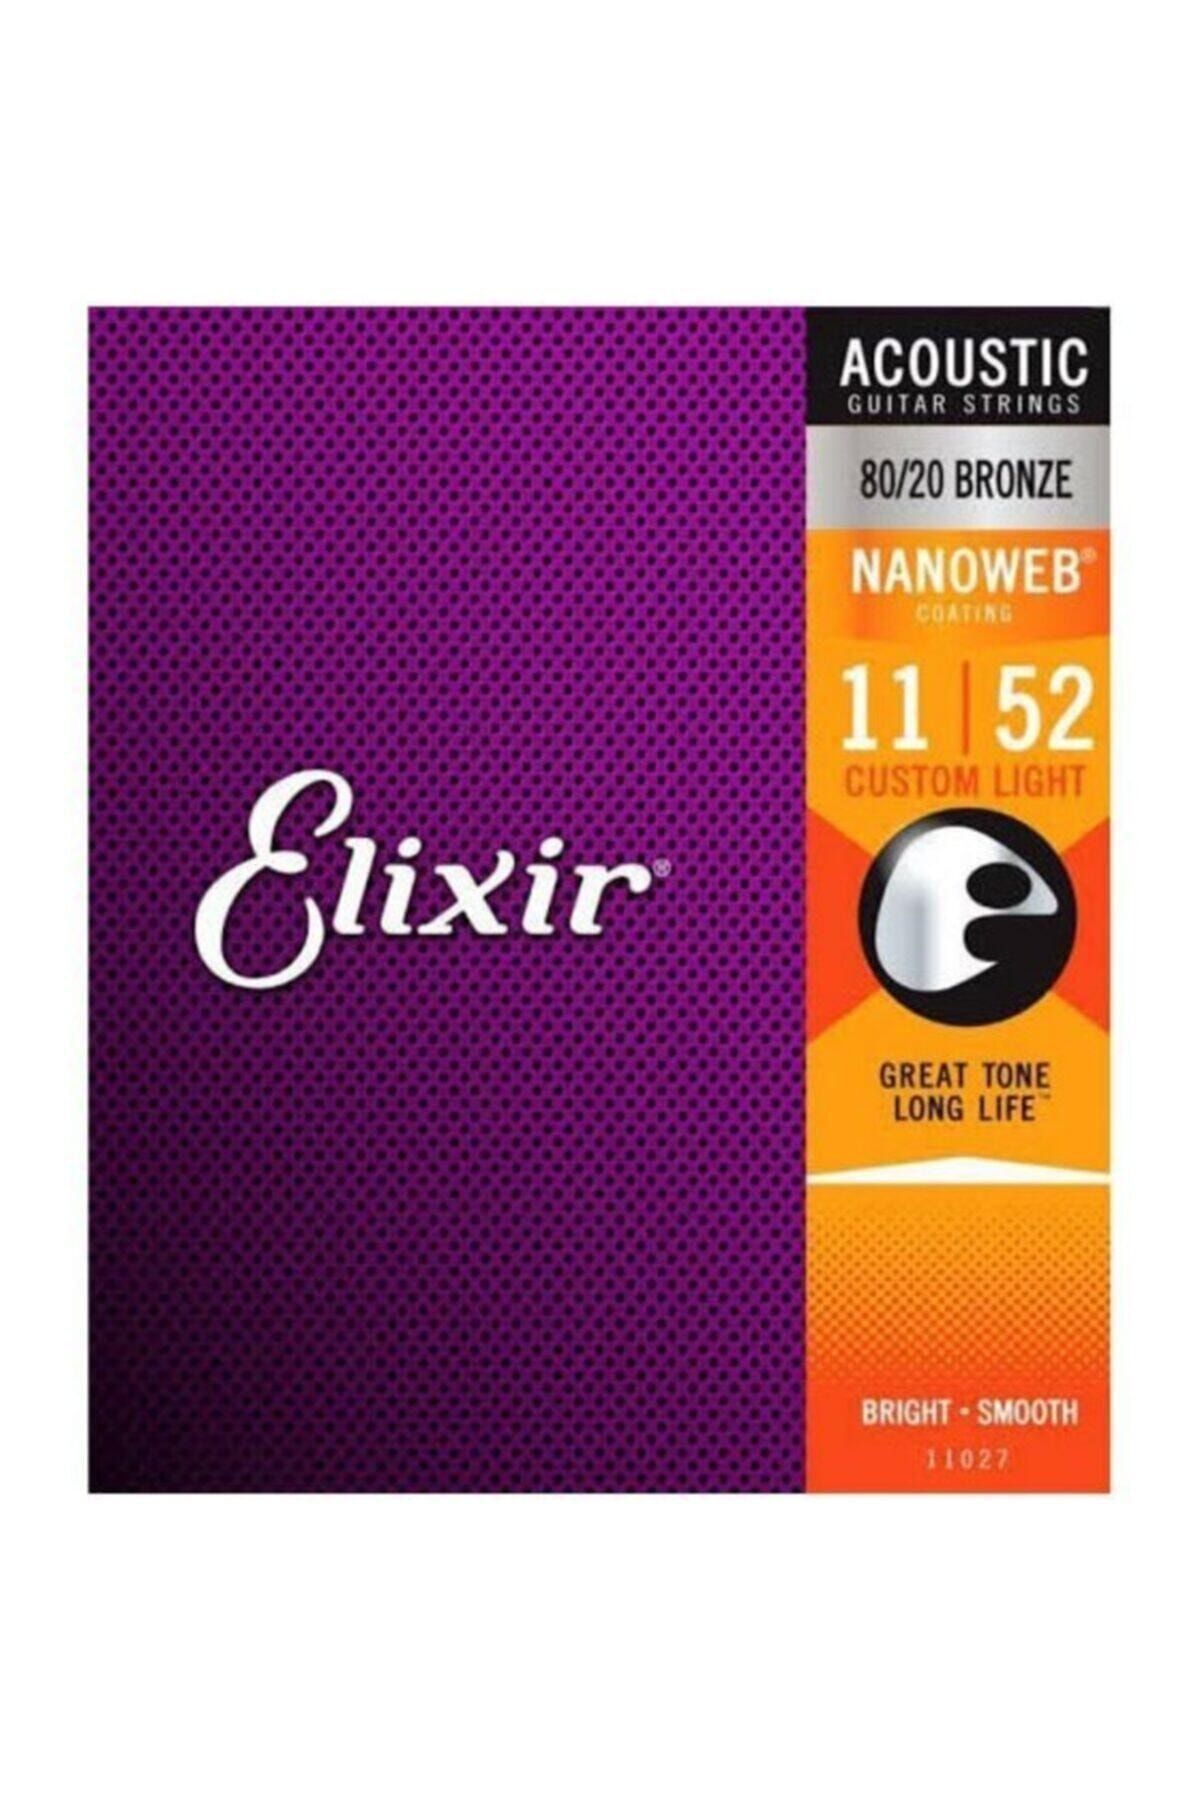 Elixir 011-052 Bronz Akustik Gitar Teli (11027)